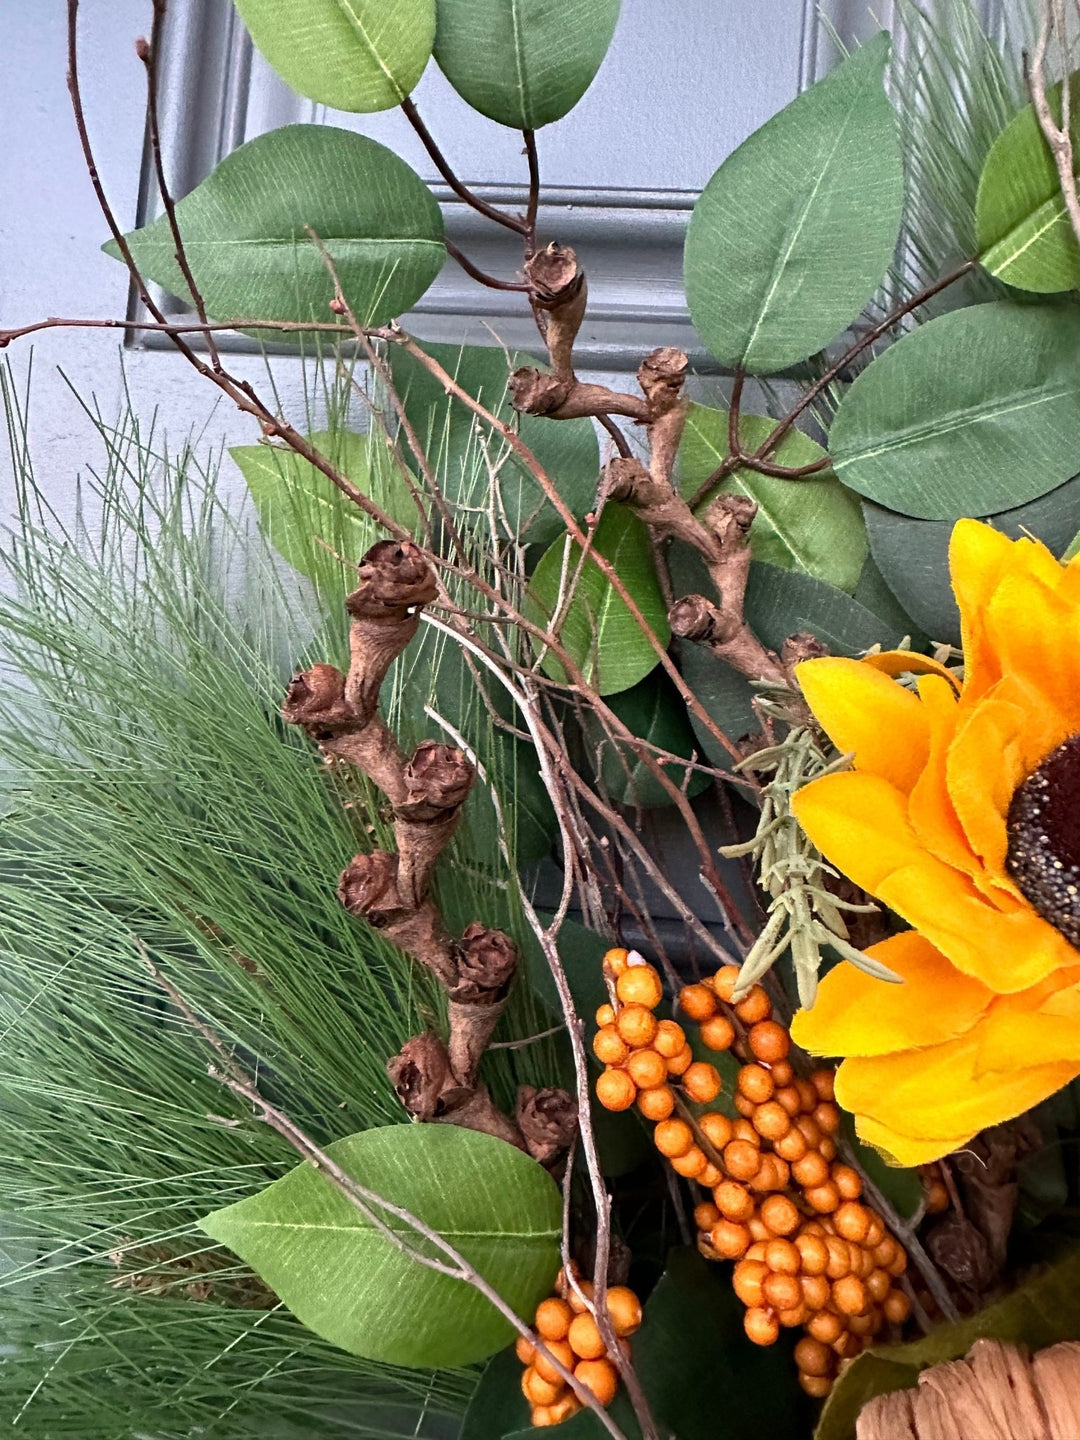 Fall basket wreath for front door